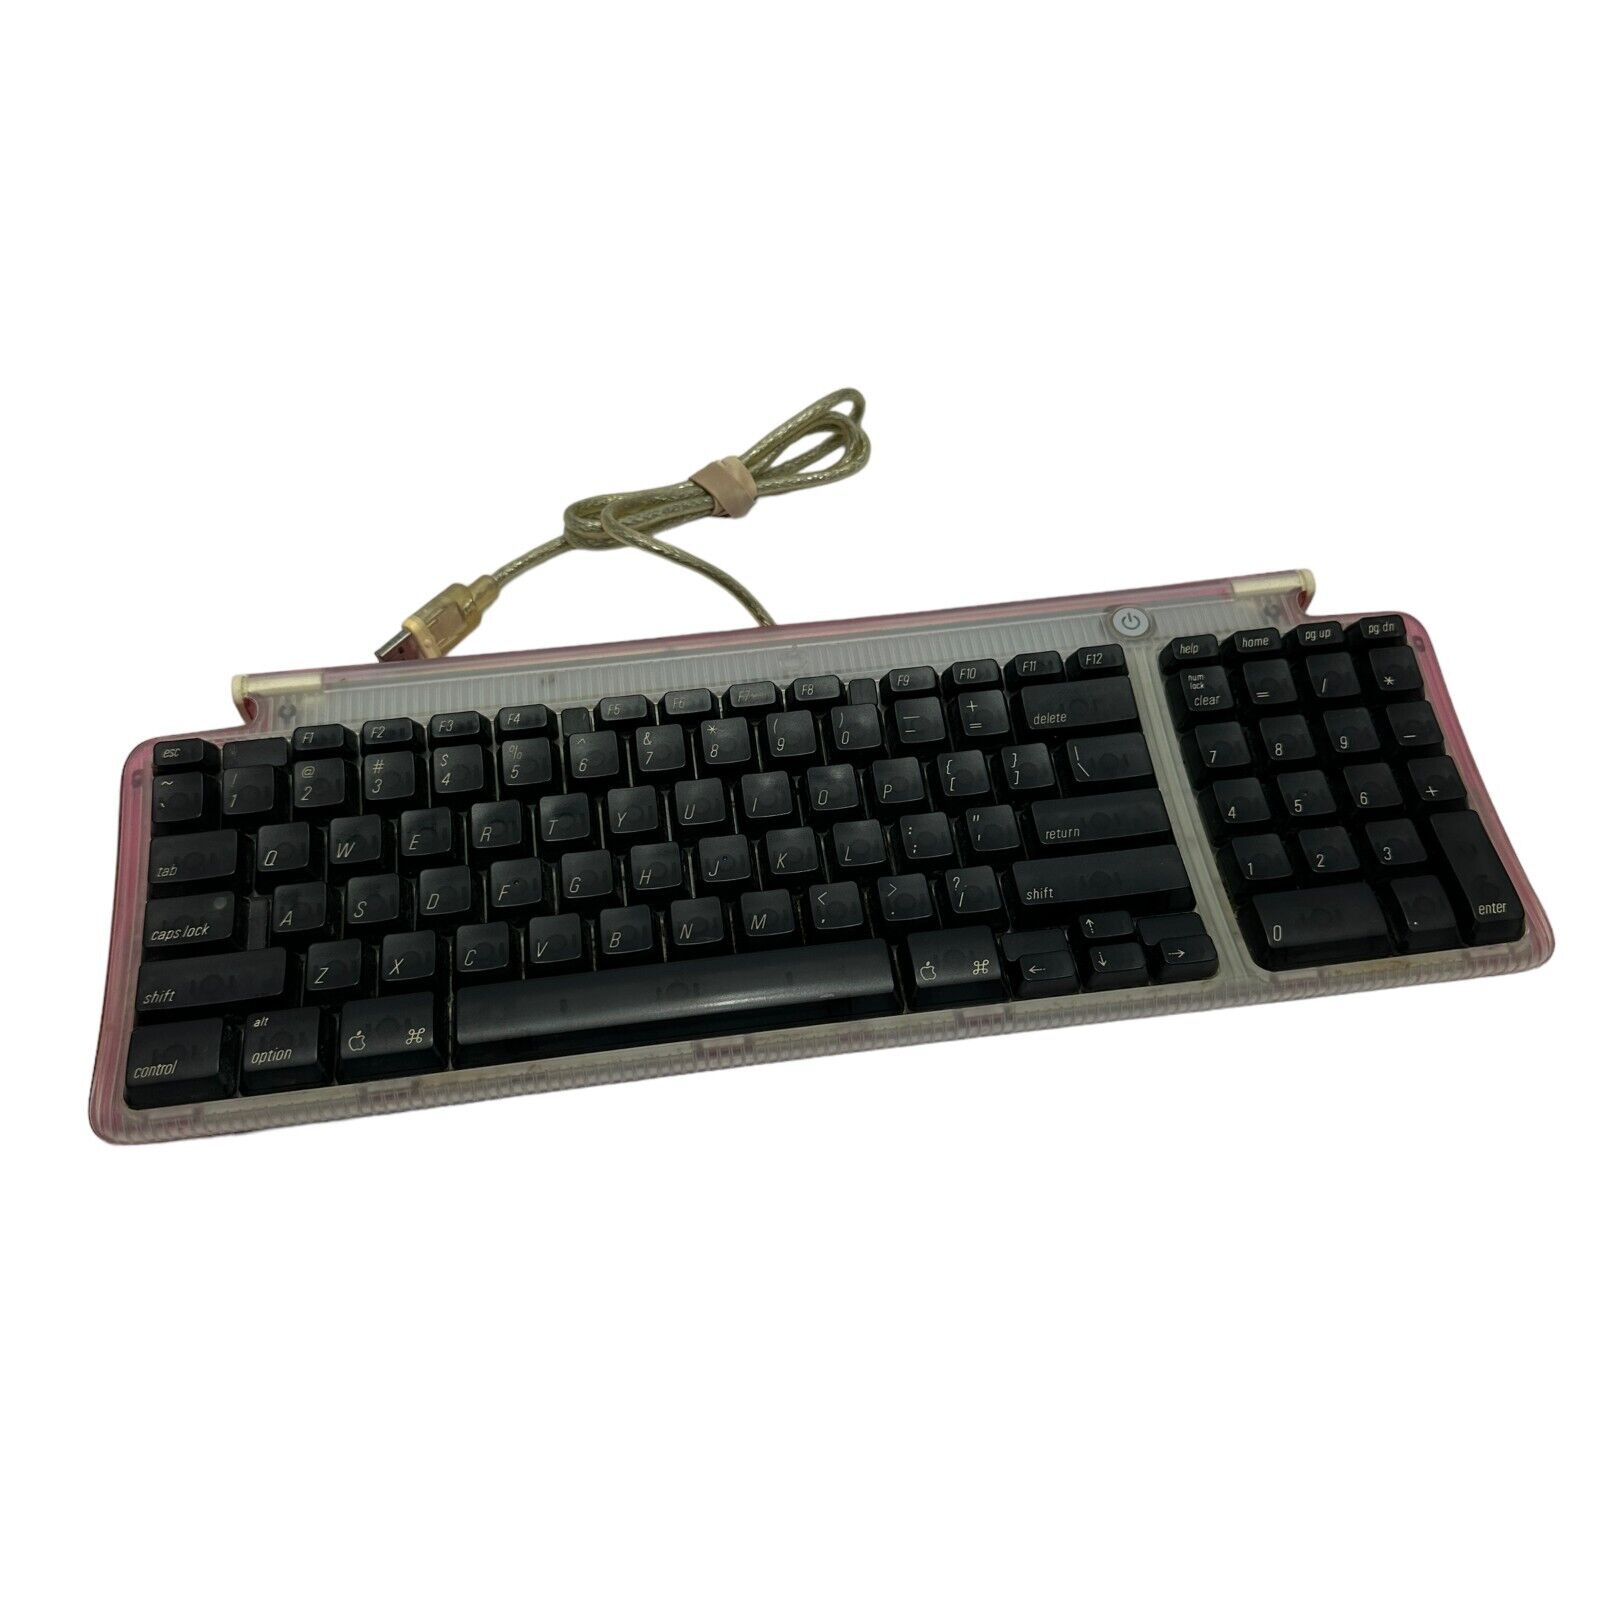 Vintage Apple USB Keyboard Model M2452 in Pink Tested Works RARE